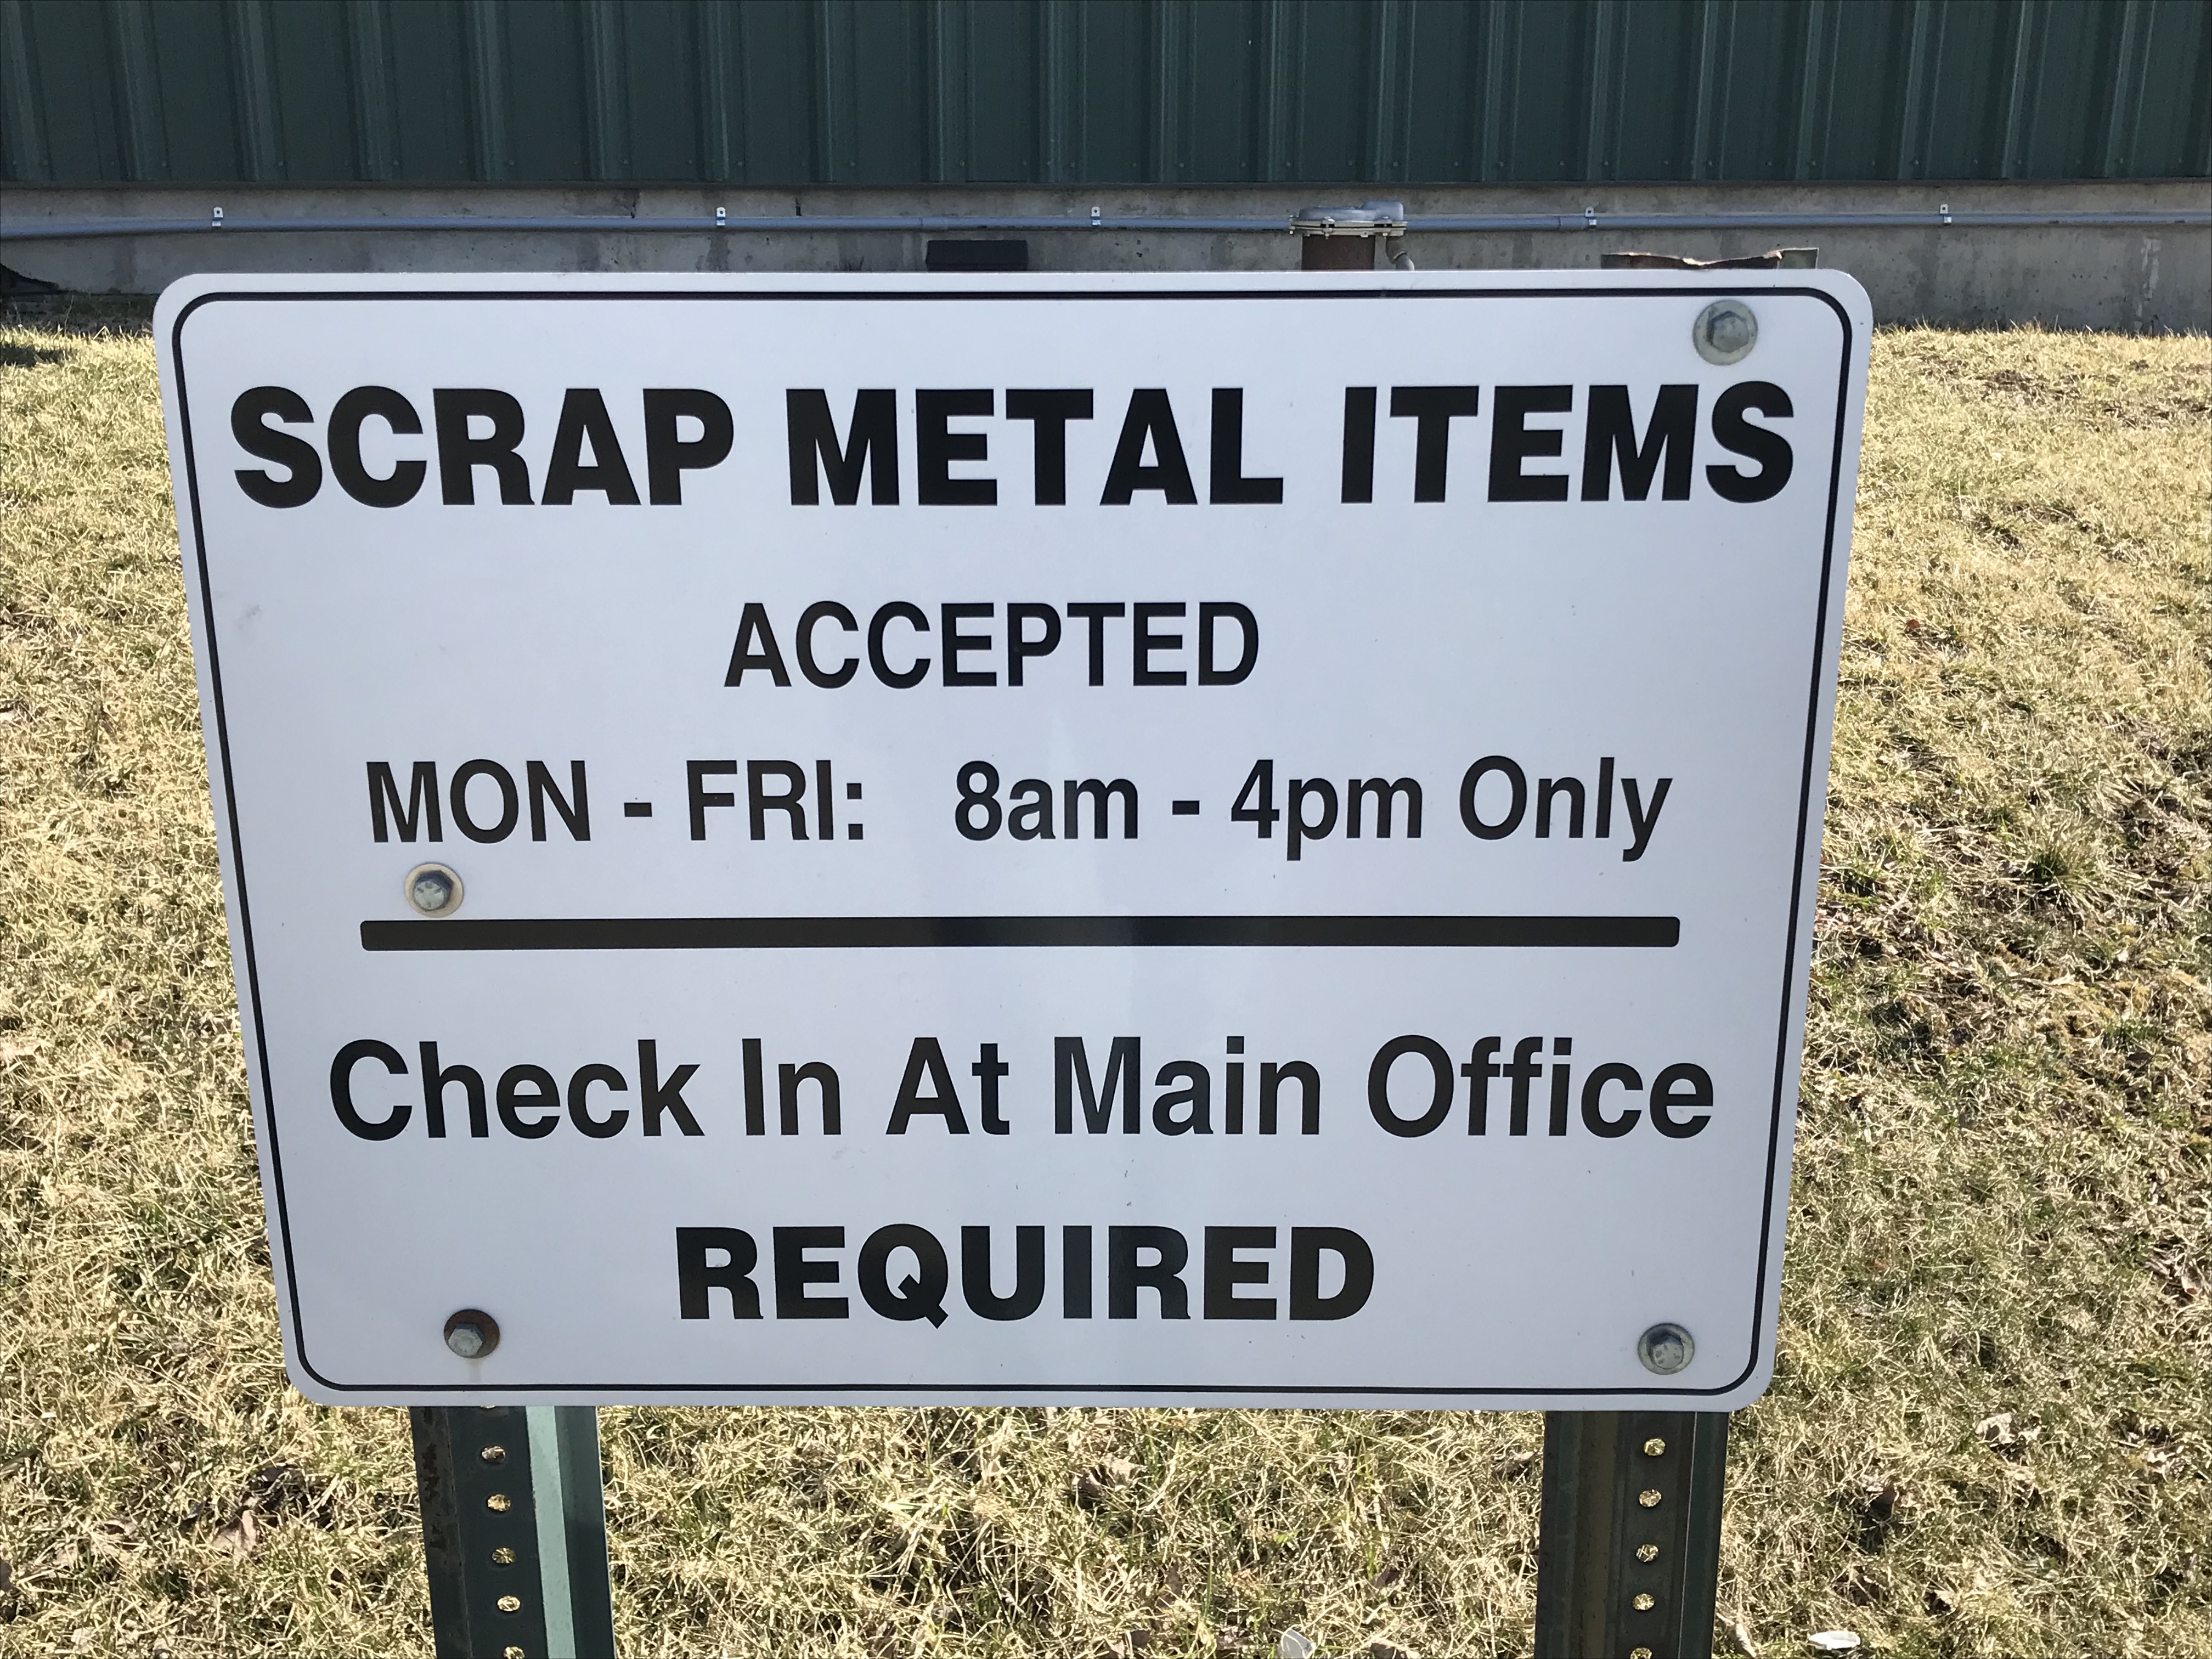 Scrap Metal